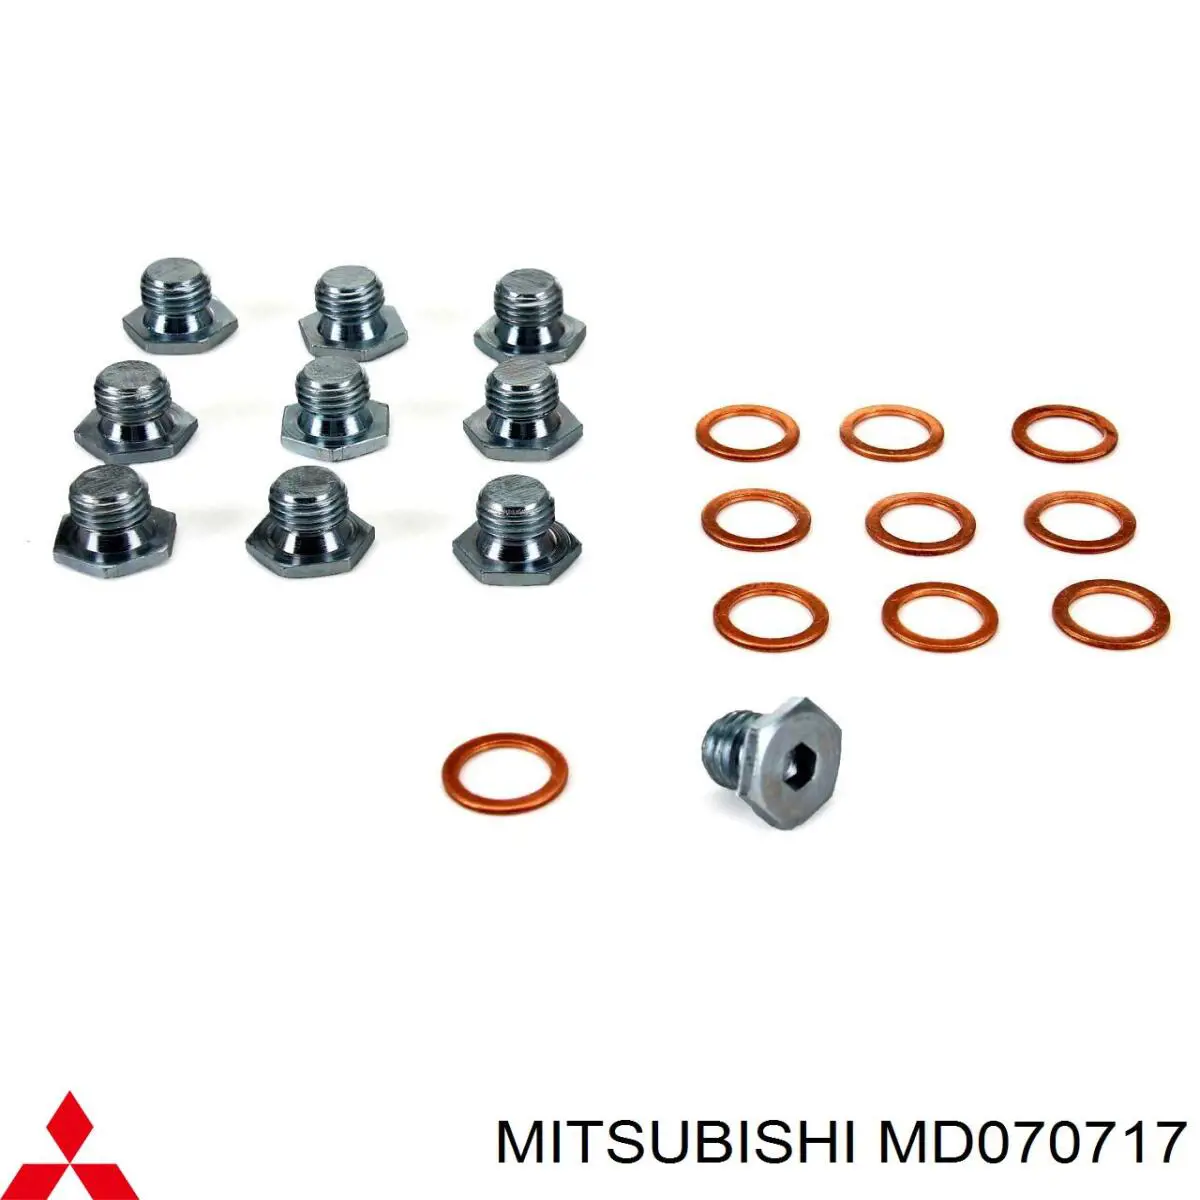 MD070717 Mitsubishi junta, tapón roscado, colector de aceite